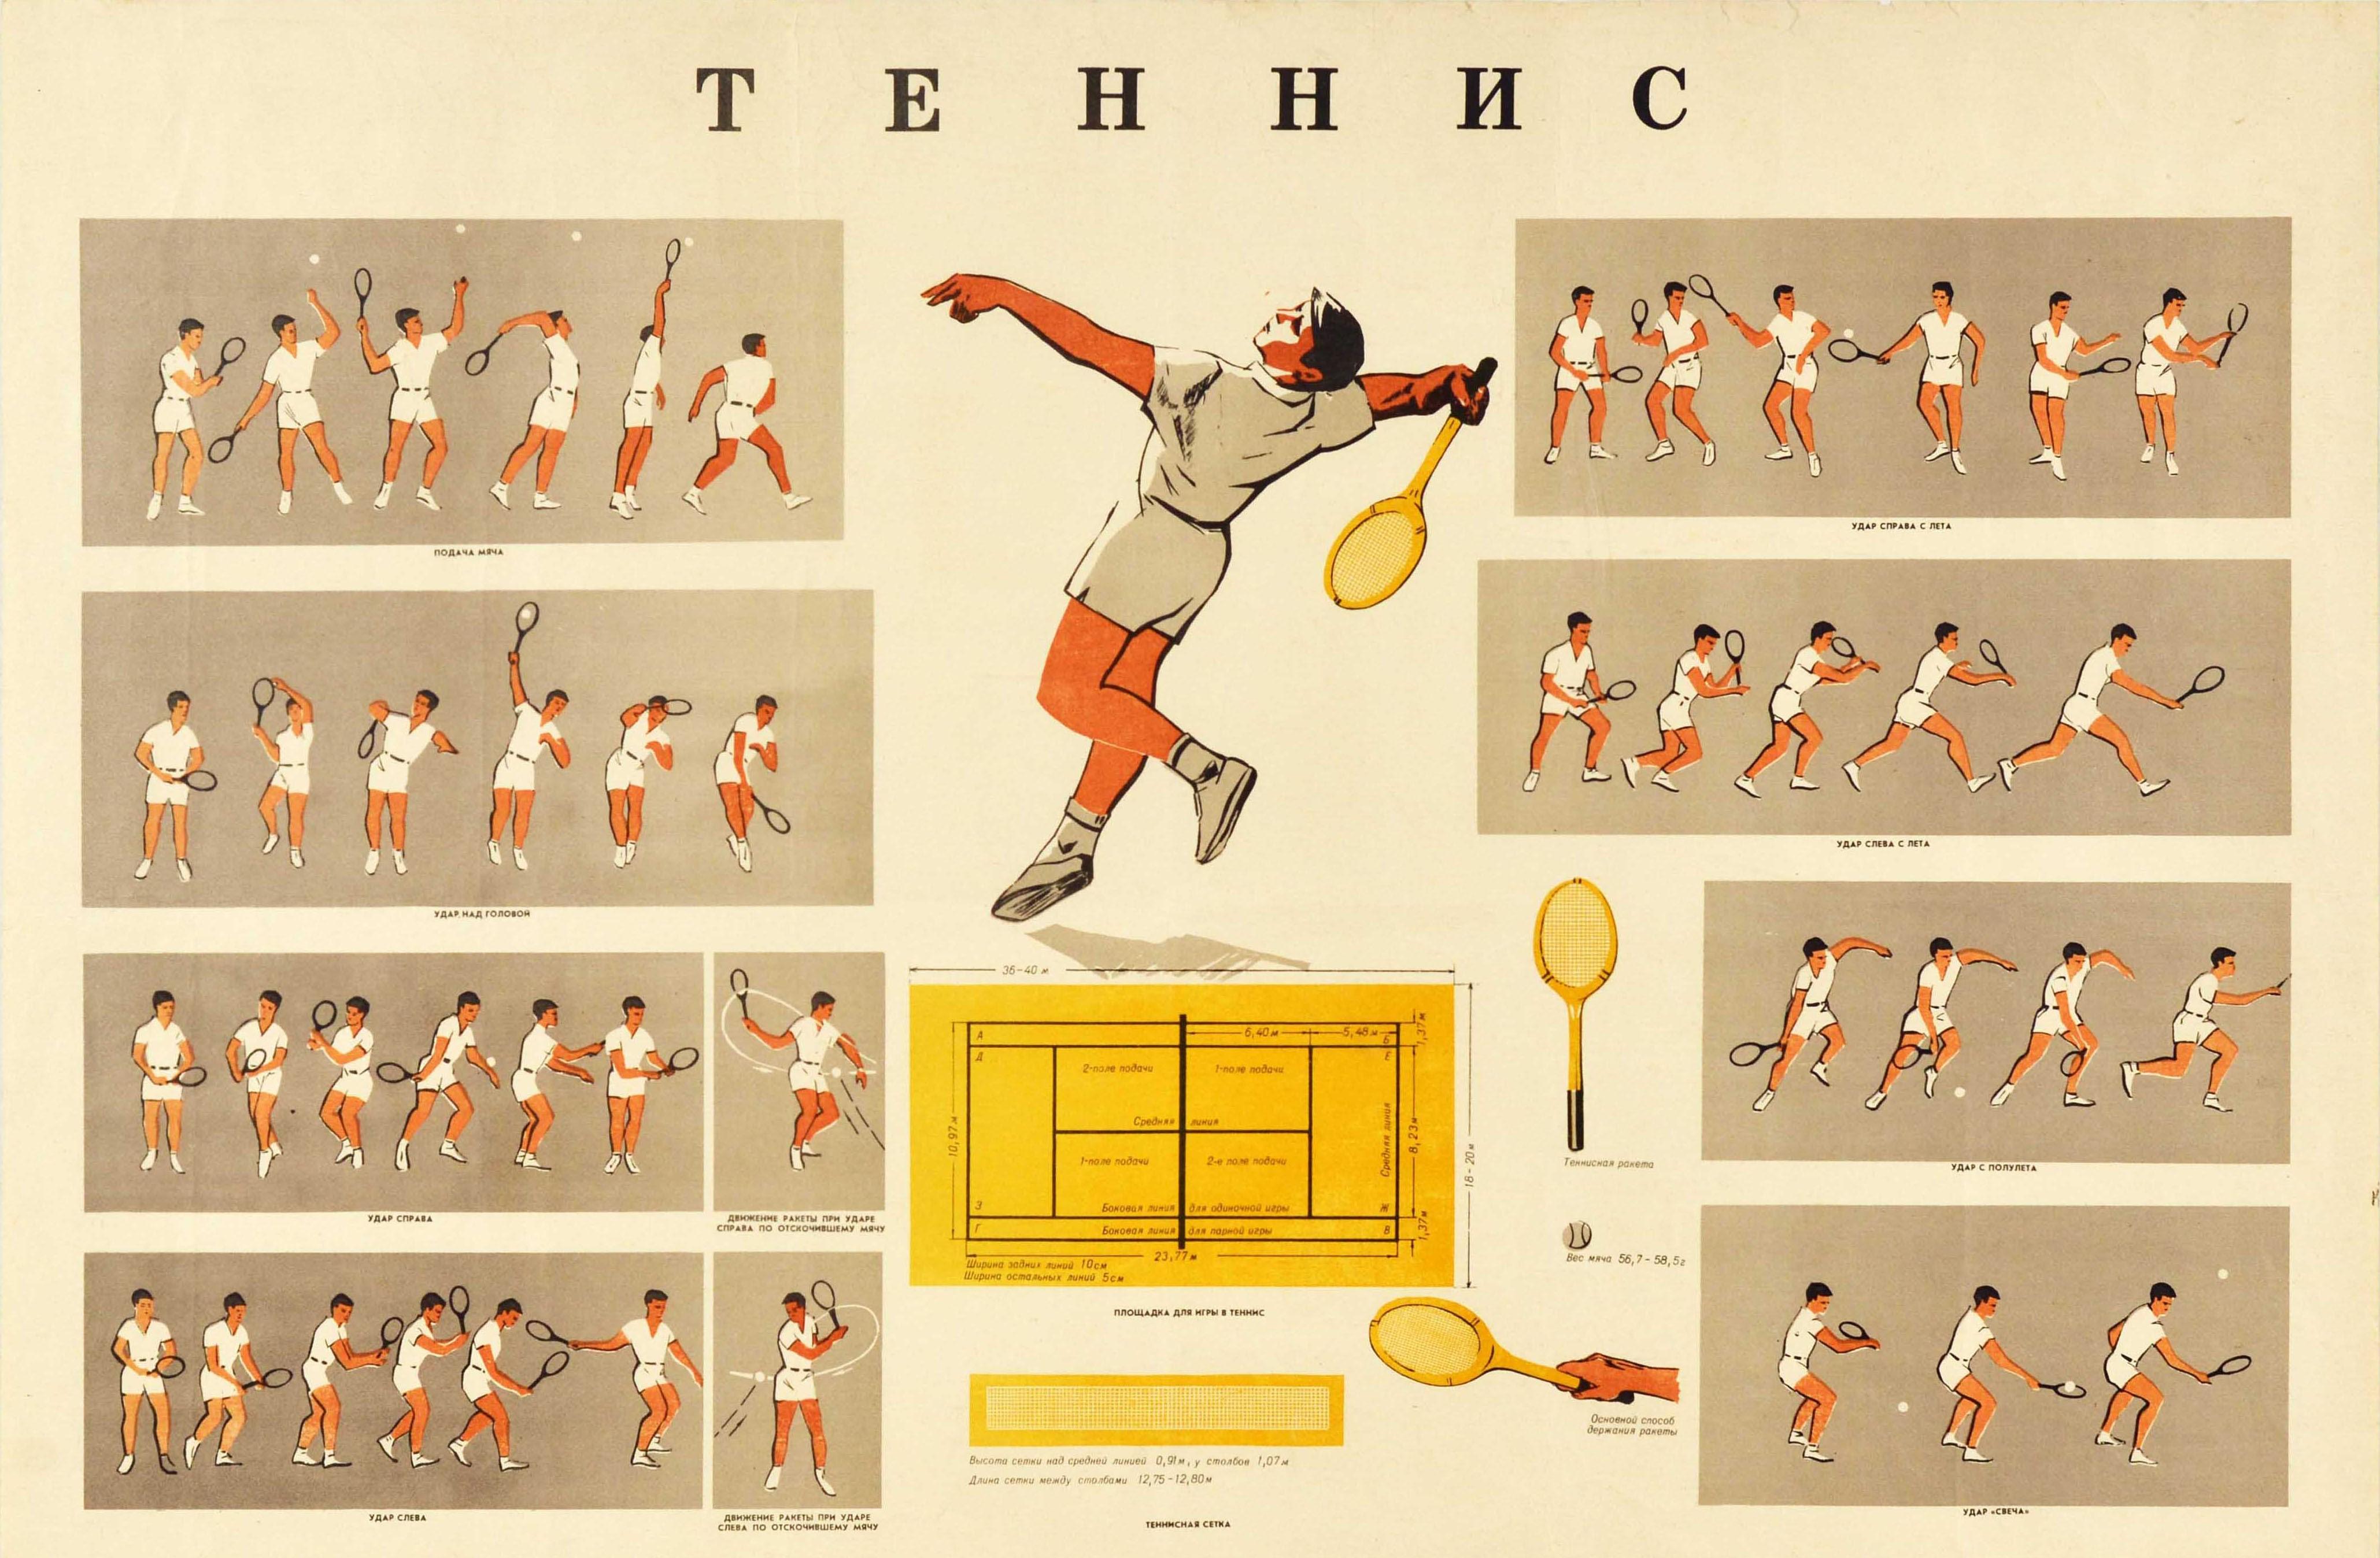 Originales sowjetisches Sportplakat, das die Positionen, Bewegungen und das Spiel von Tennis / ?????? in Bildern zeigt, die einen Spieler in jedem Feld zeigen, der verschiedene Aktionen wie Aufschlag und Rückhandschlag ausführt, einen Spieler, der